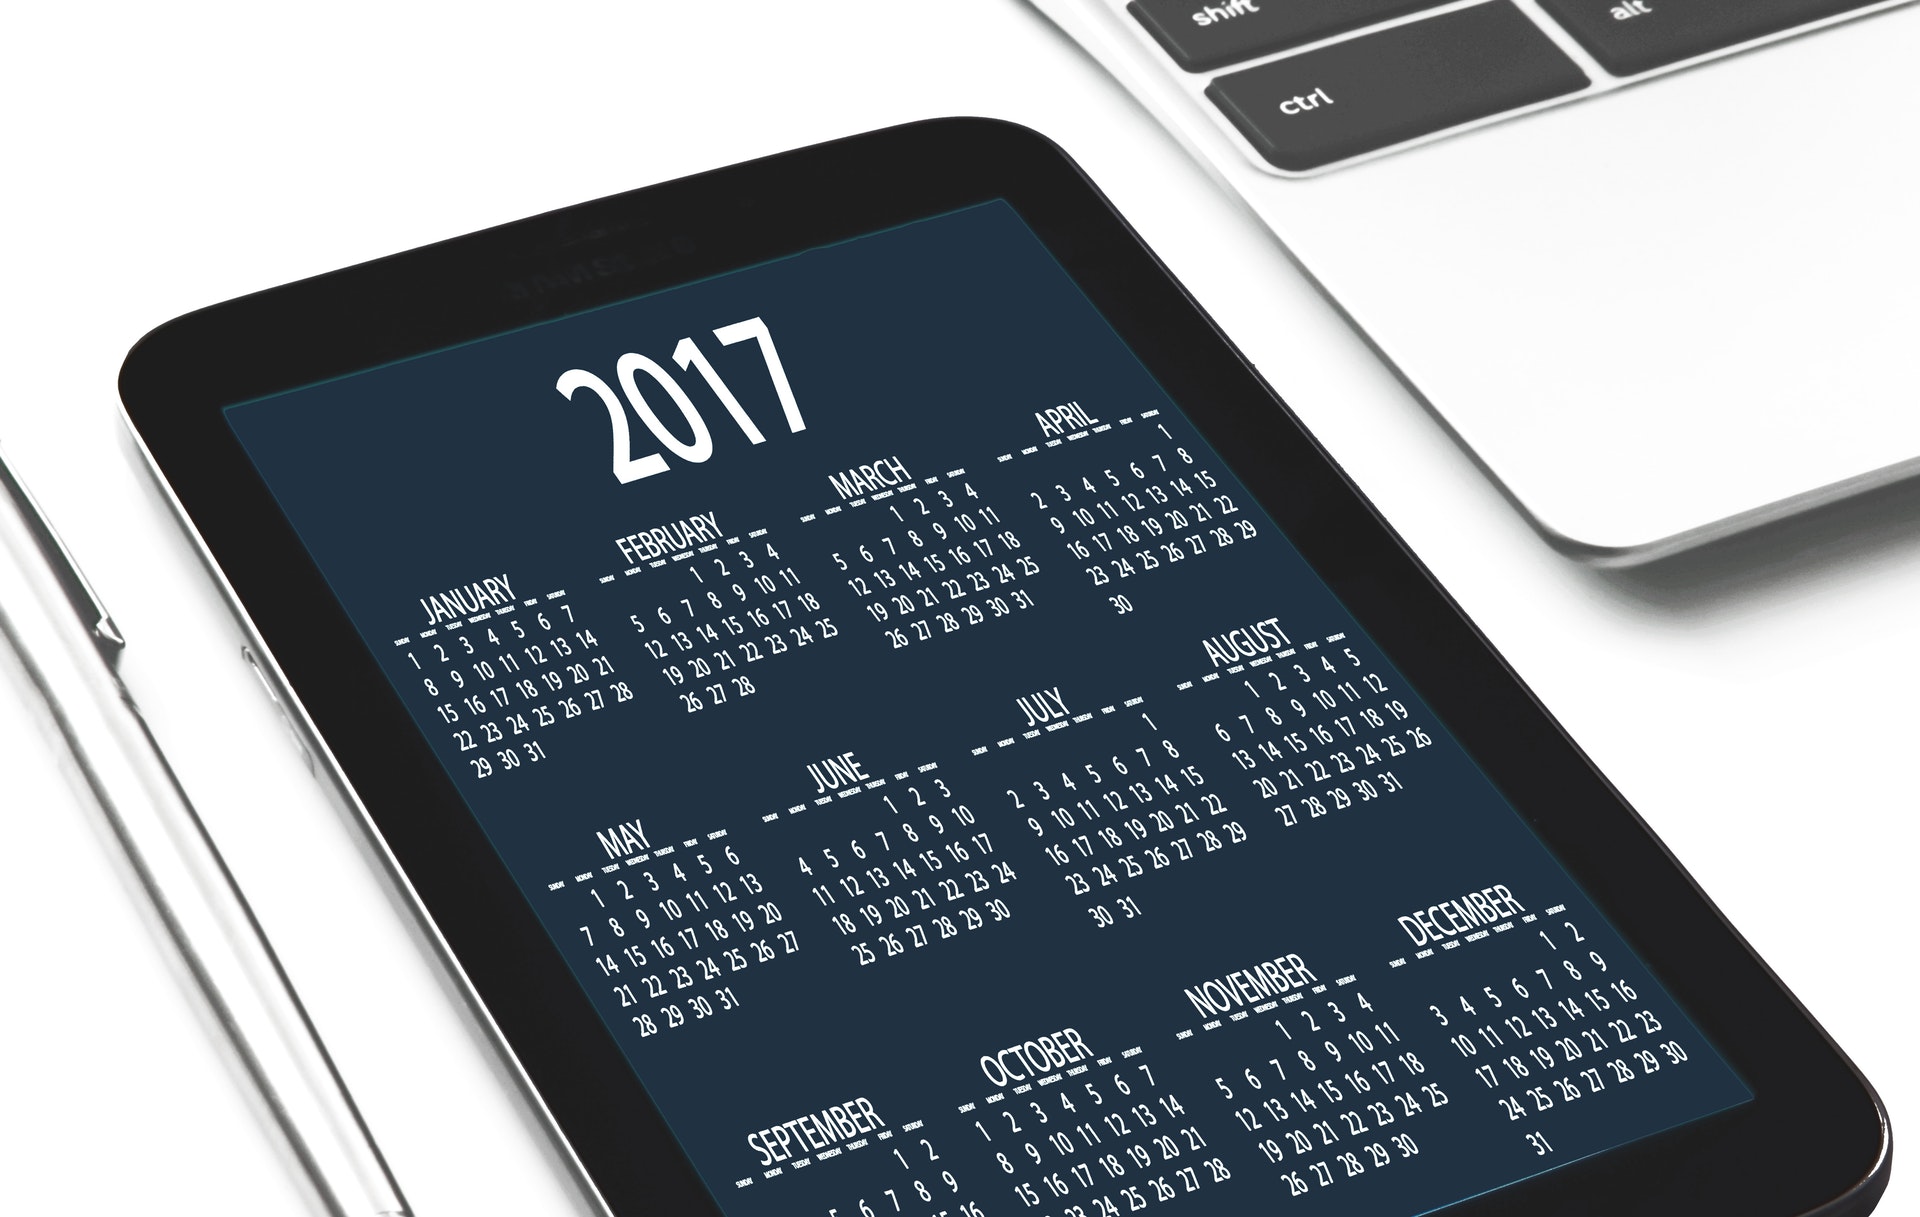 An image of a 2017 calendar on a tablet.